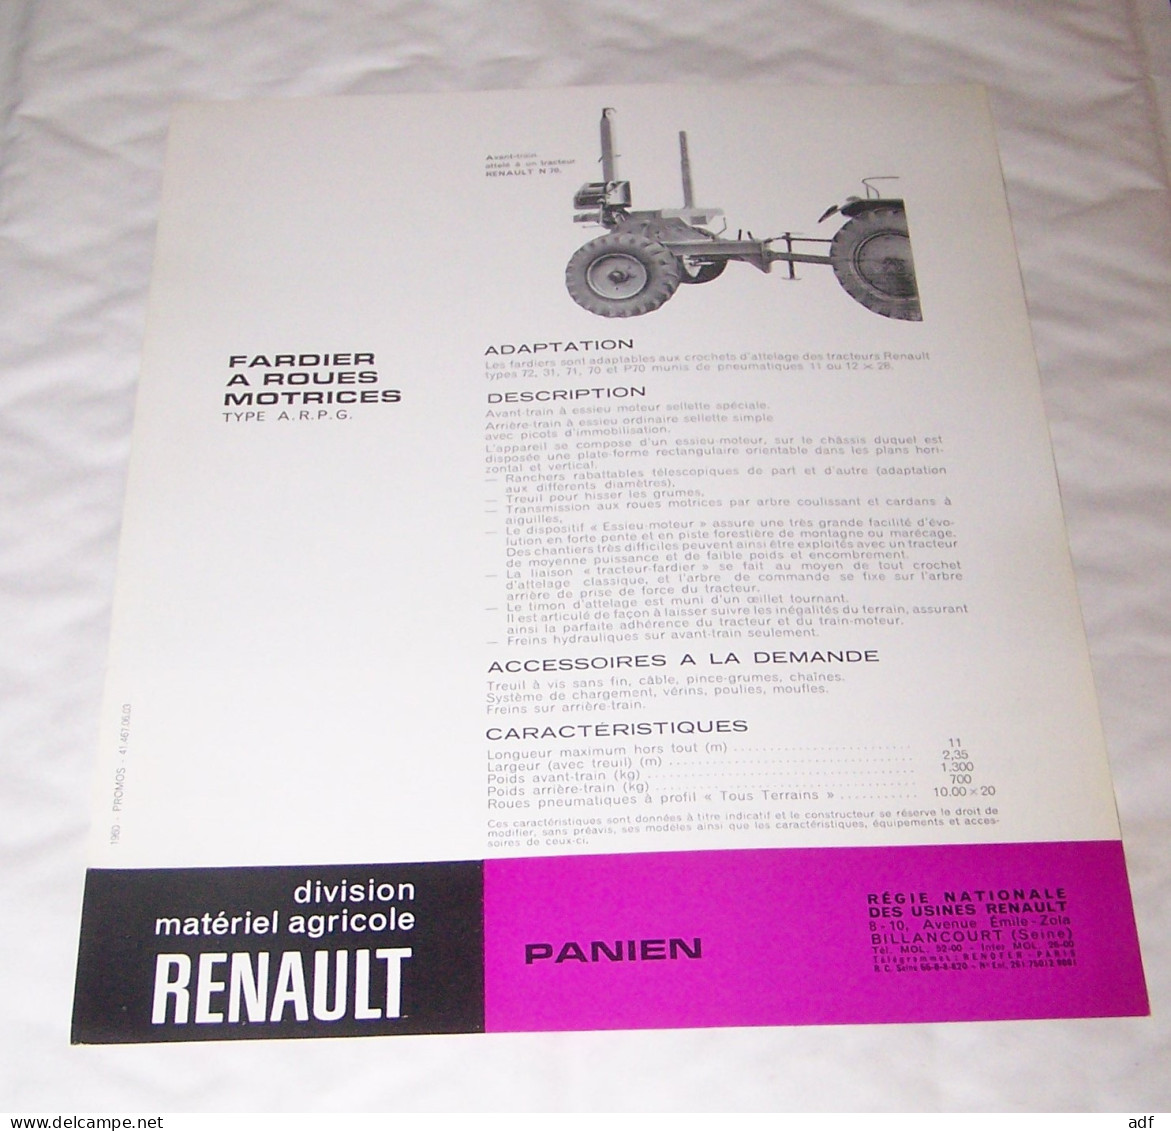 FEUILLET PUB PUBLICITAIRE MATERIEL RENAULT FARDIER A ROUES MOTRICES PANIEN ( TRACTEUR, TRACTEURS, MOTOCULTURE ) - Tracteurs